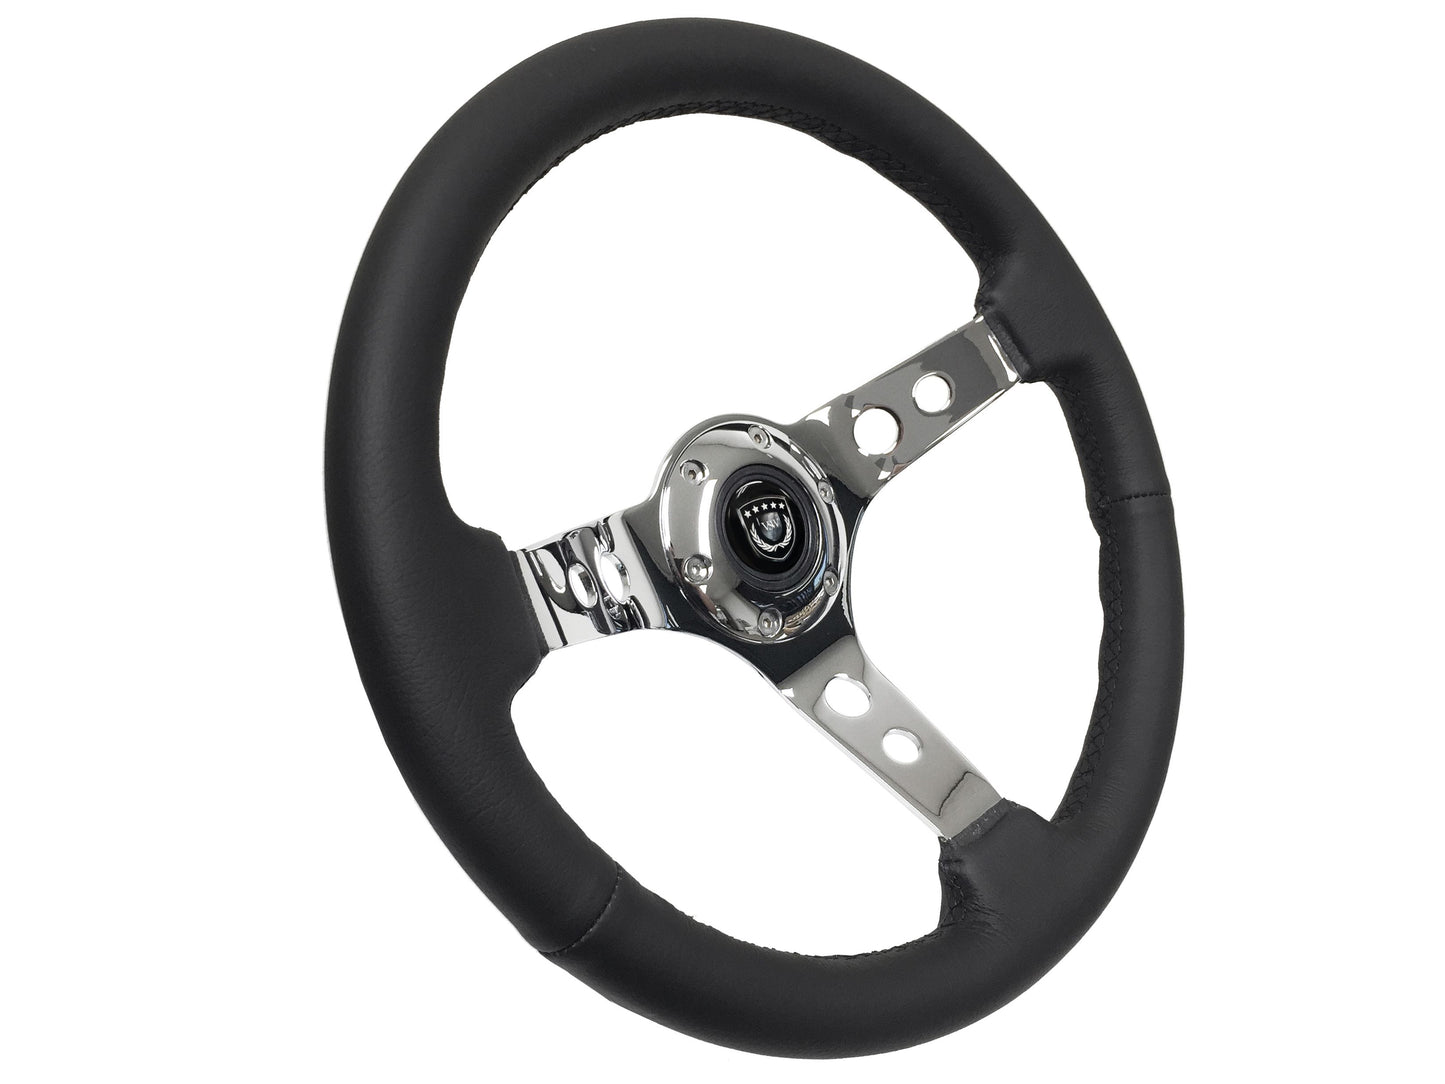 VSW S6 Sport Steering Wheel | Leather, Chrome 3-Spoke w/ Holes | ST3095BLK